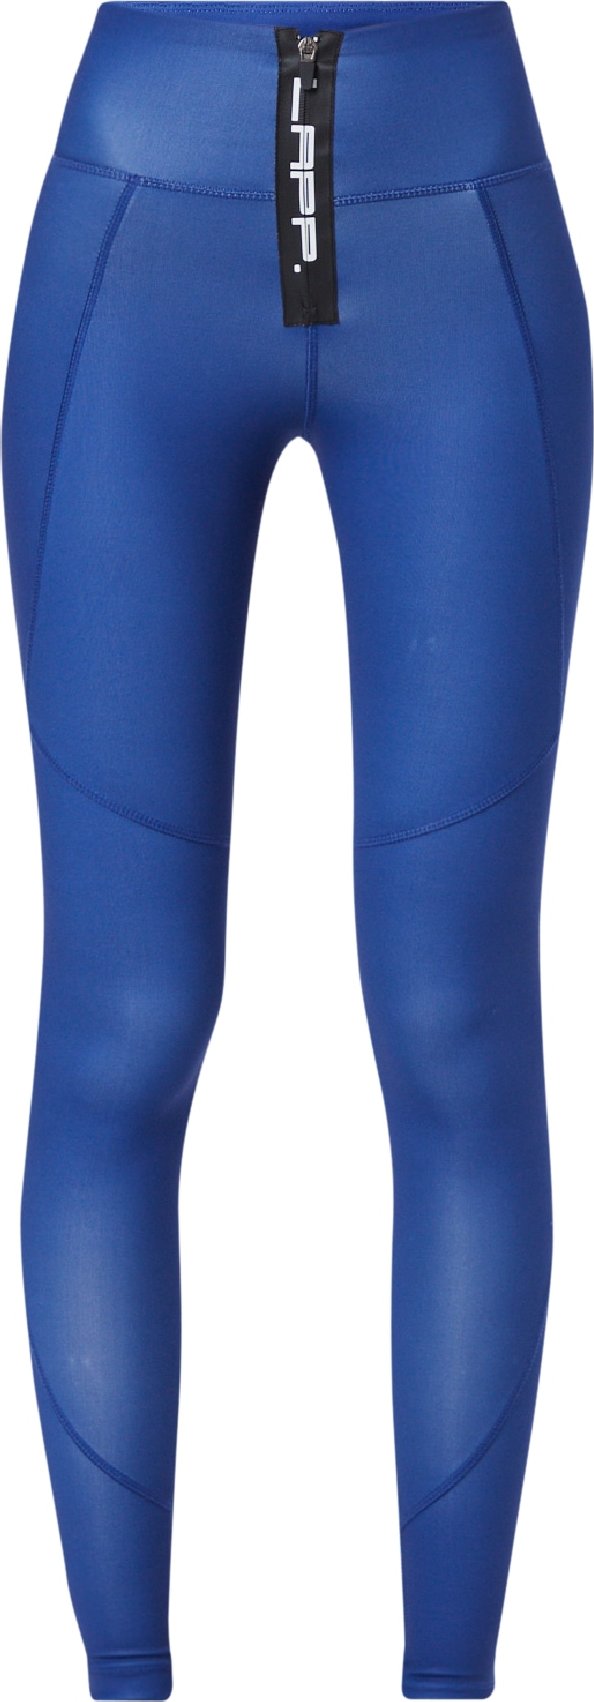 Lapp the Brand Sportovní kalhoty modrá / bílá